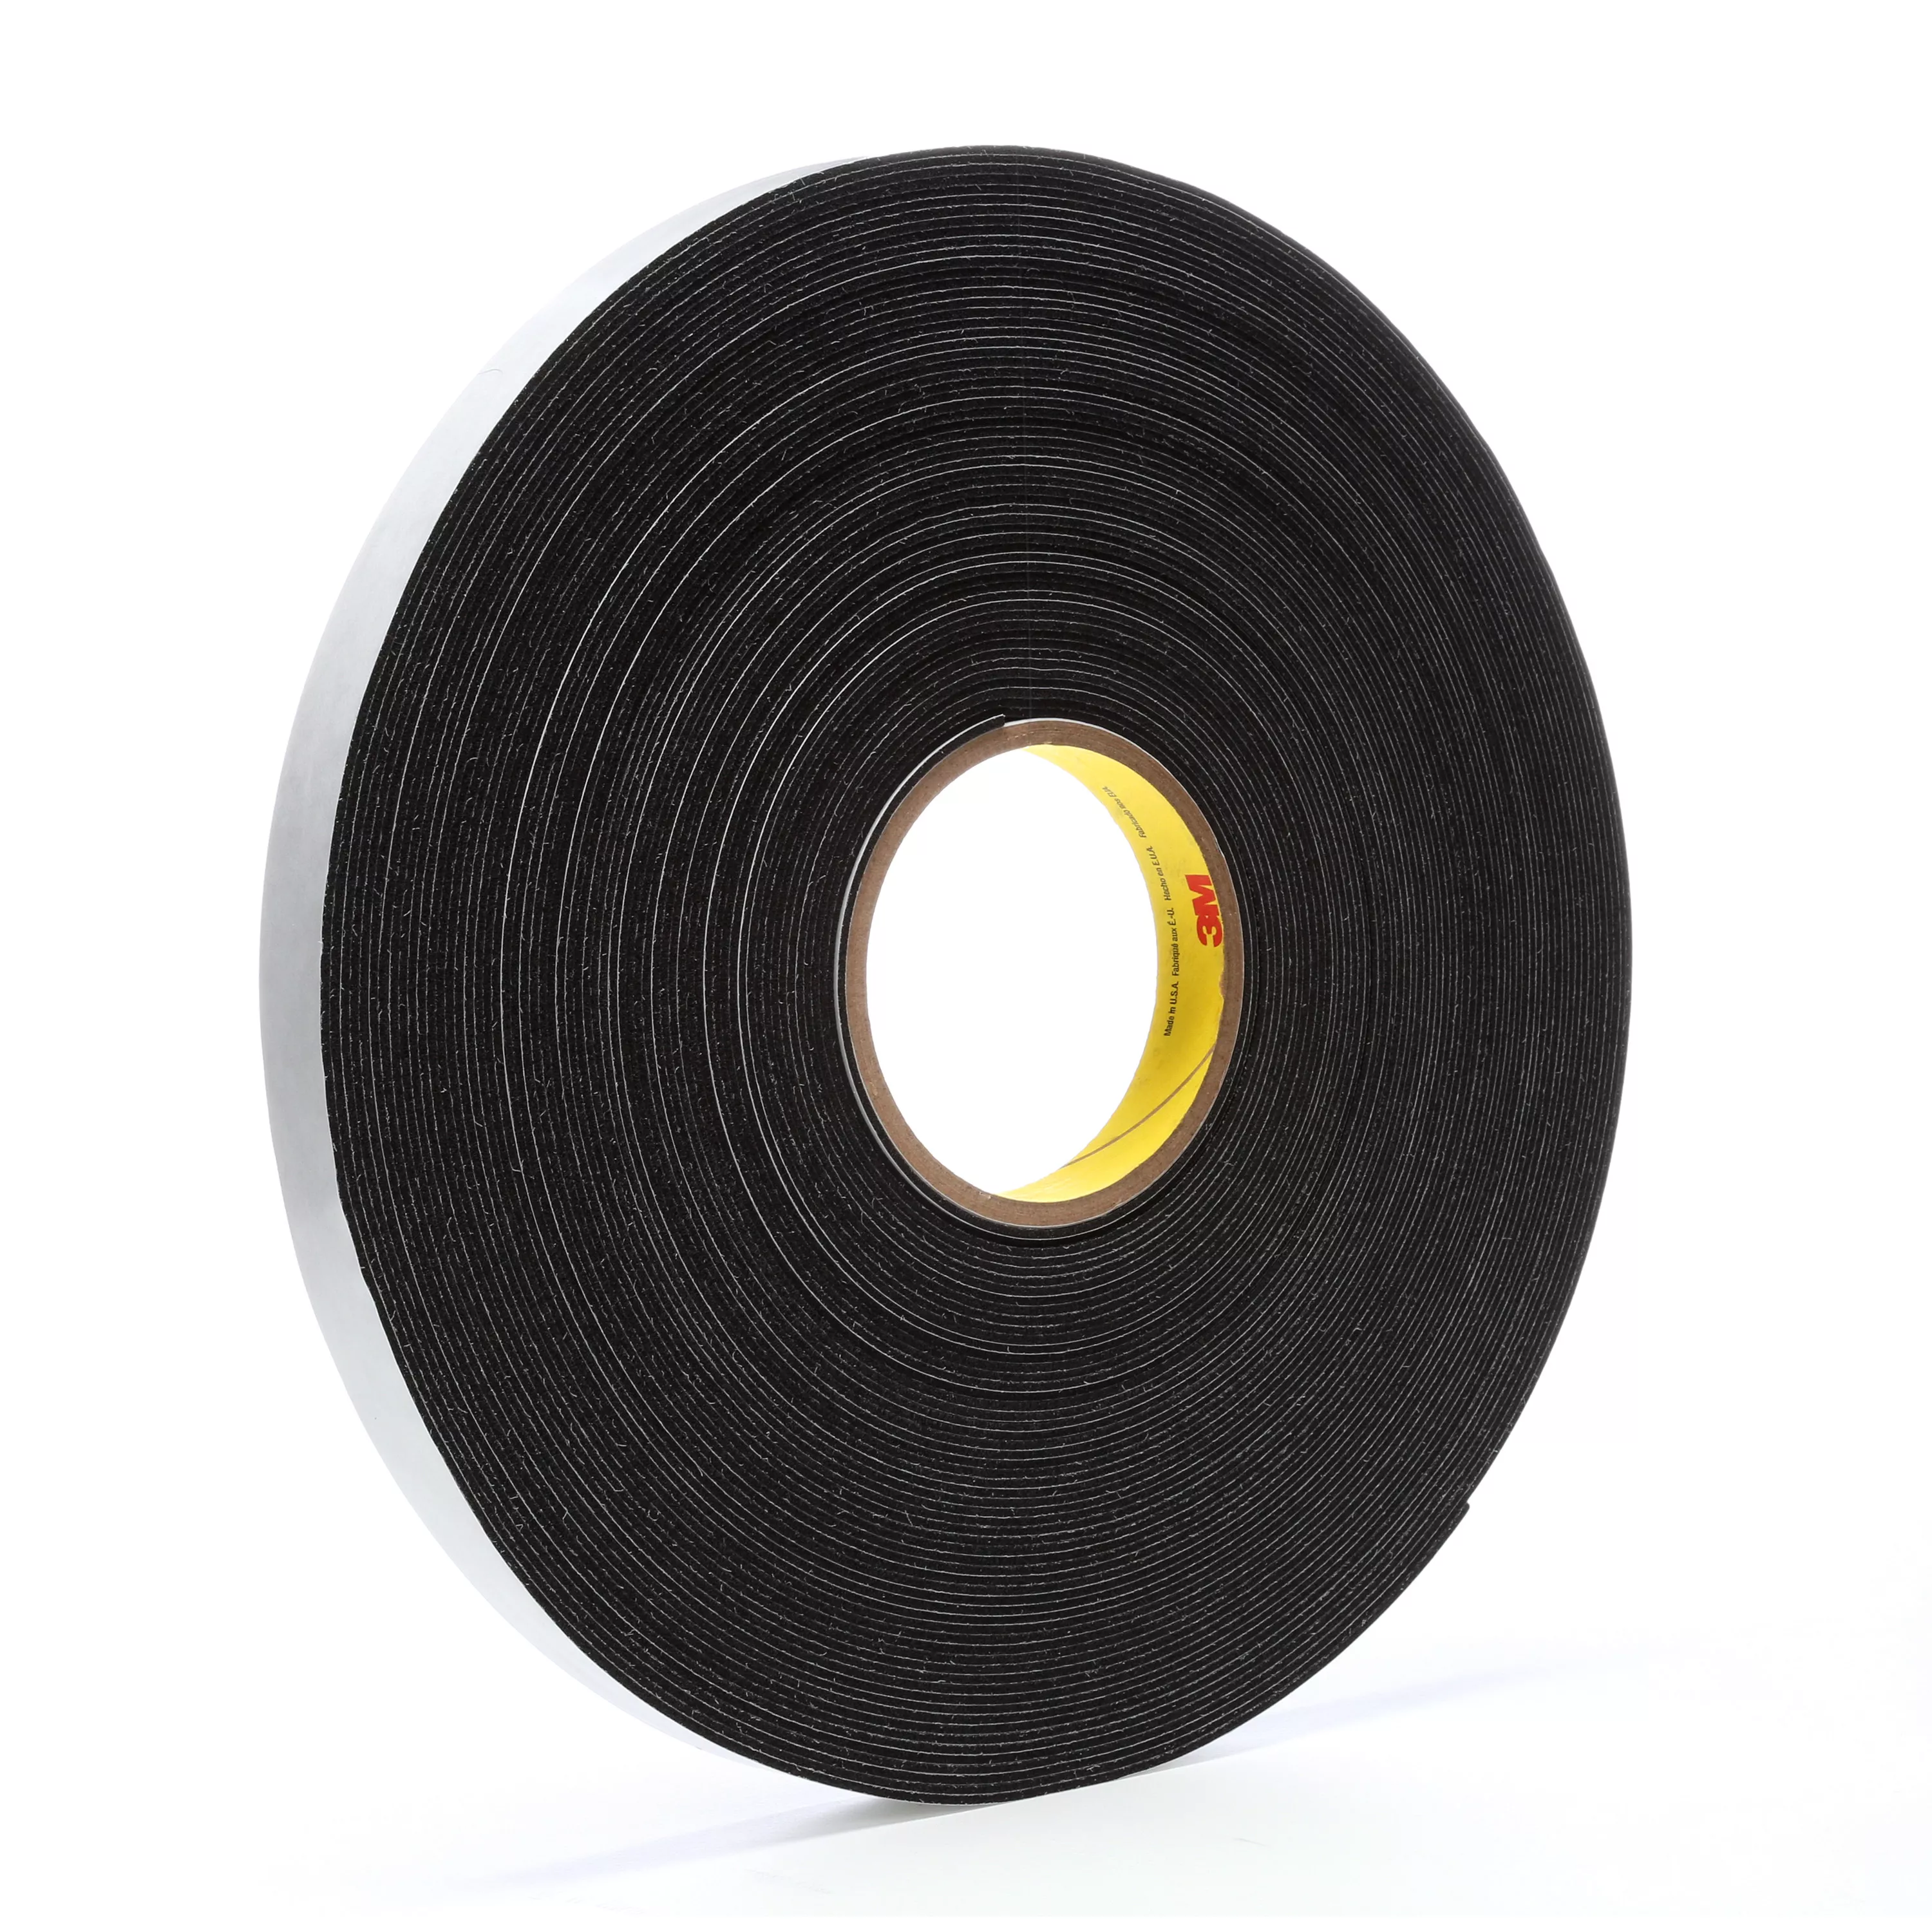 3M™ Vinyl Foam Tape 4516, Black, 3/4 in x 36 yd, 62 mil, 12 Roll/Case